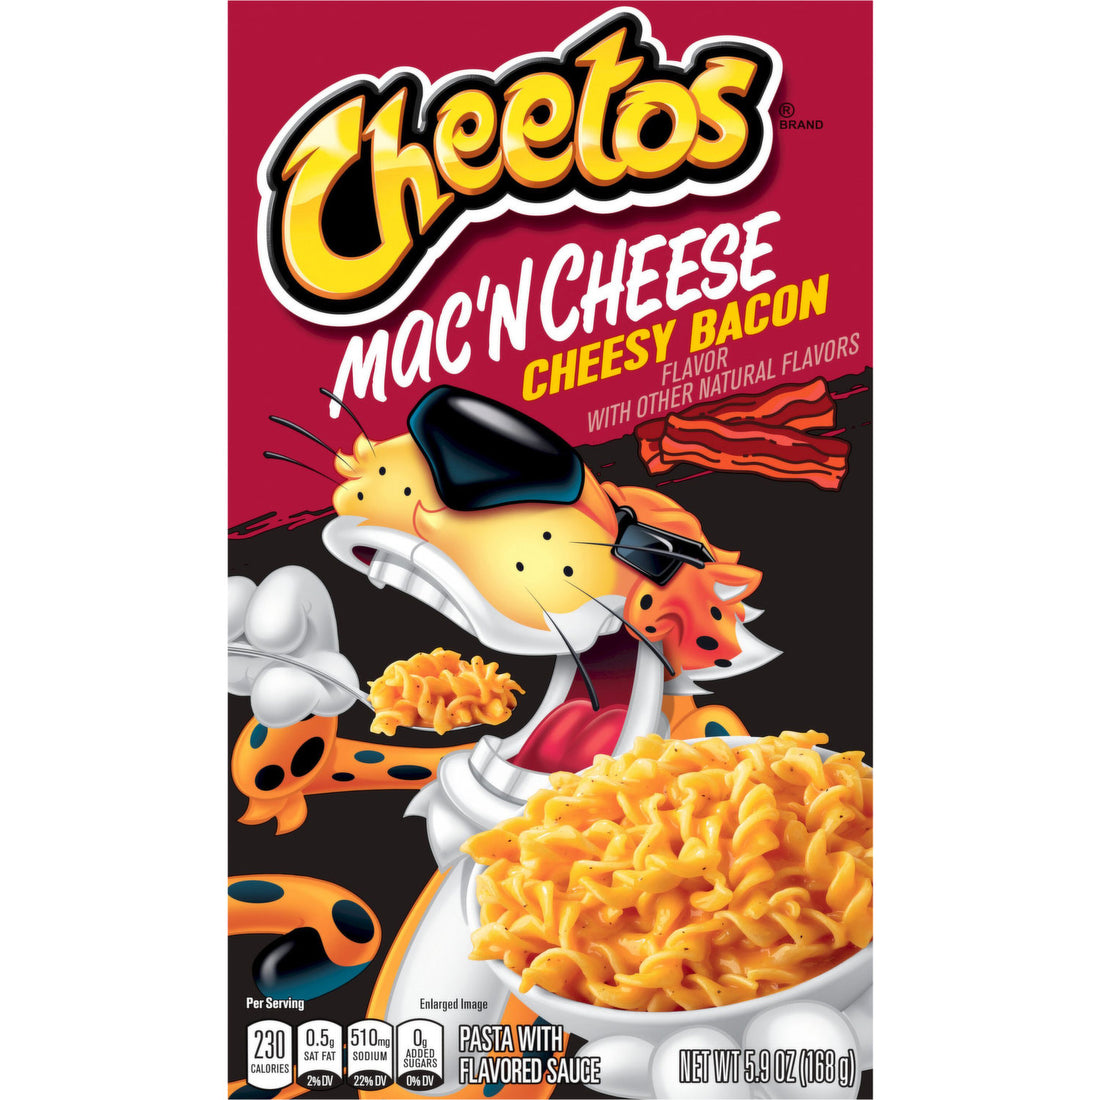 Cheetos Mac'n Cheese Cheesy Bacon Flavor, 5.9 oz